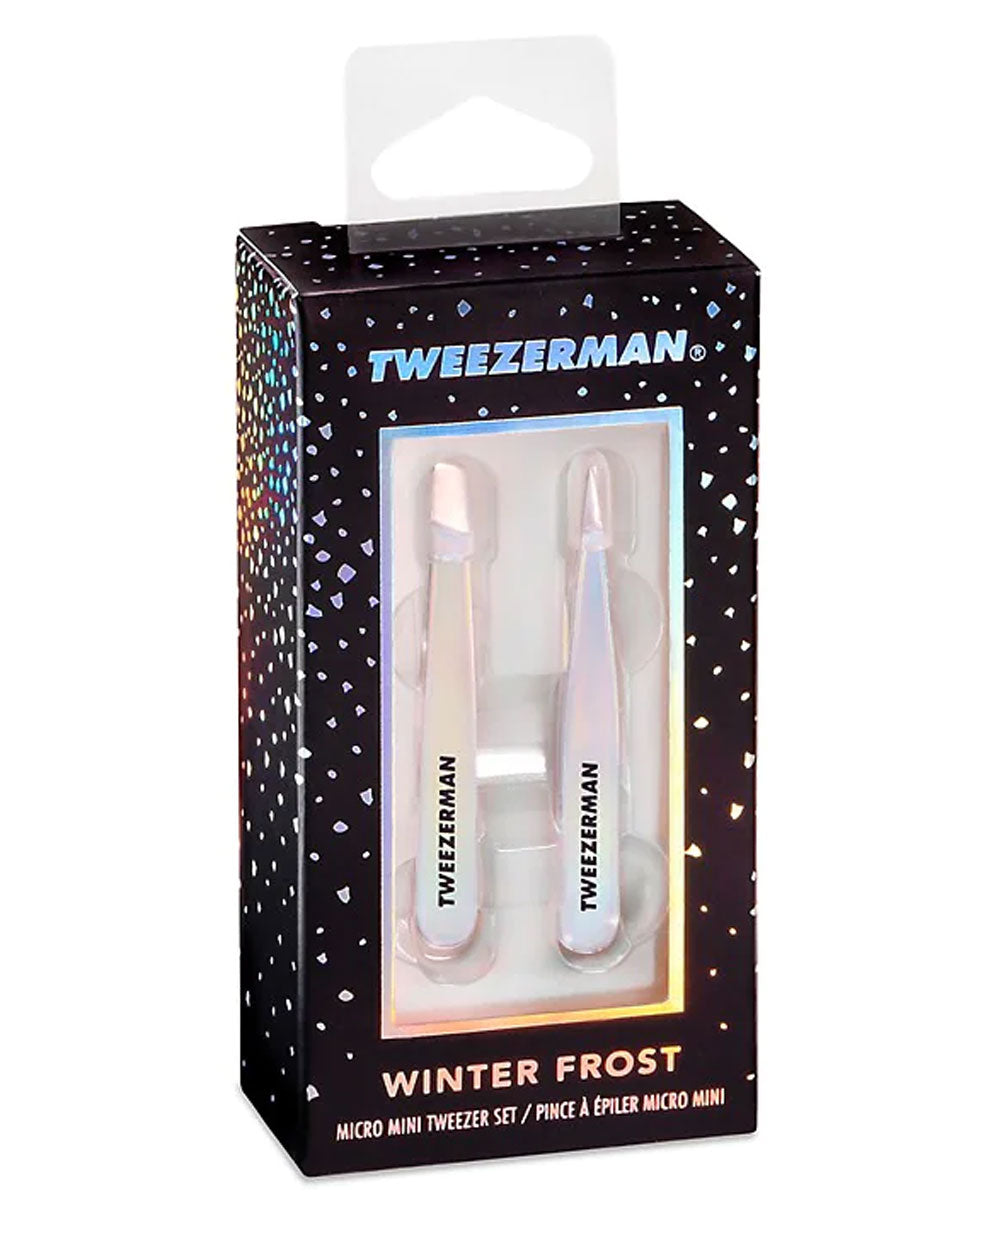 Tweezerman Winter Frost Micro Mini Tweezer Set